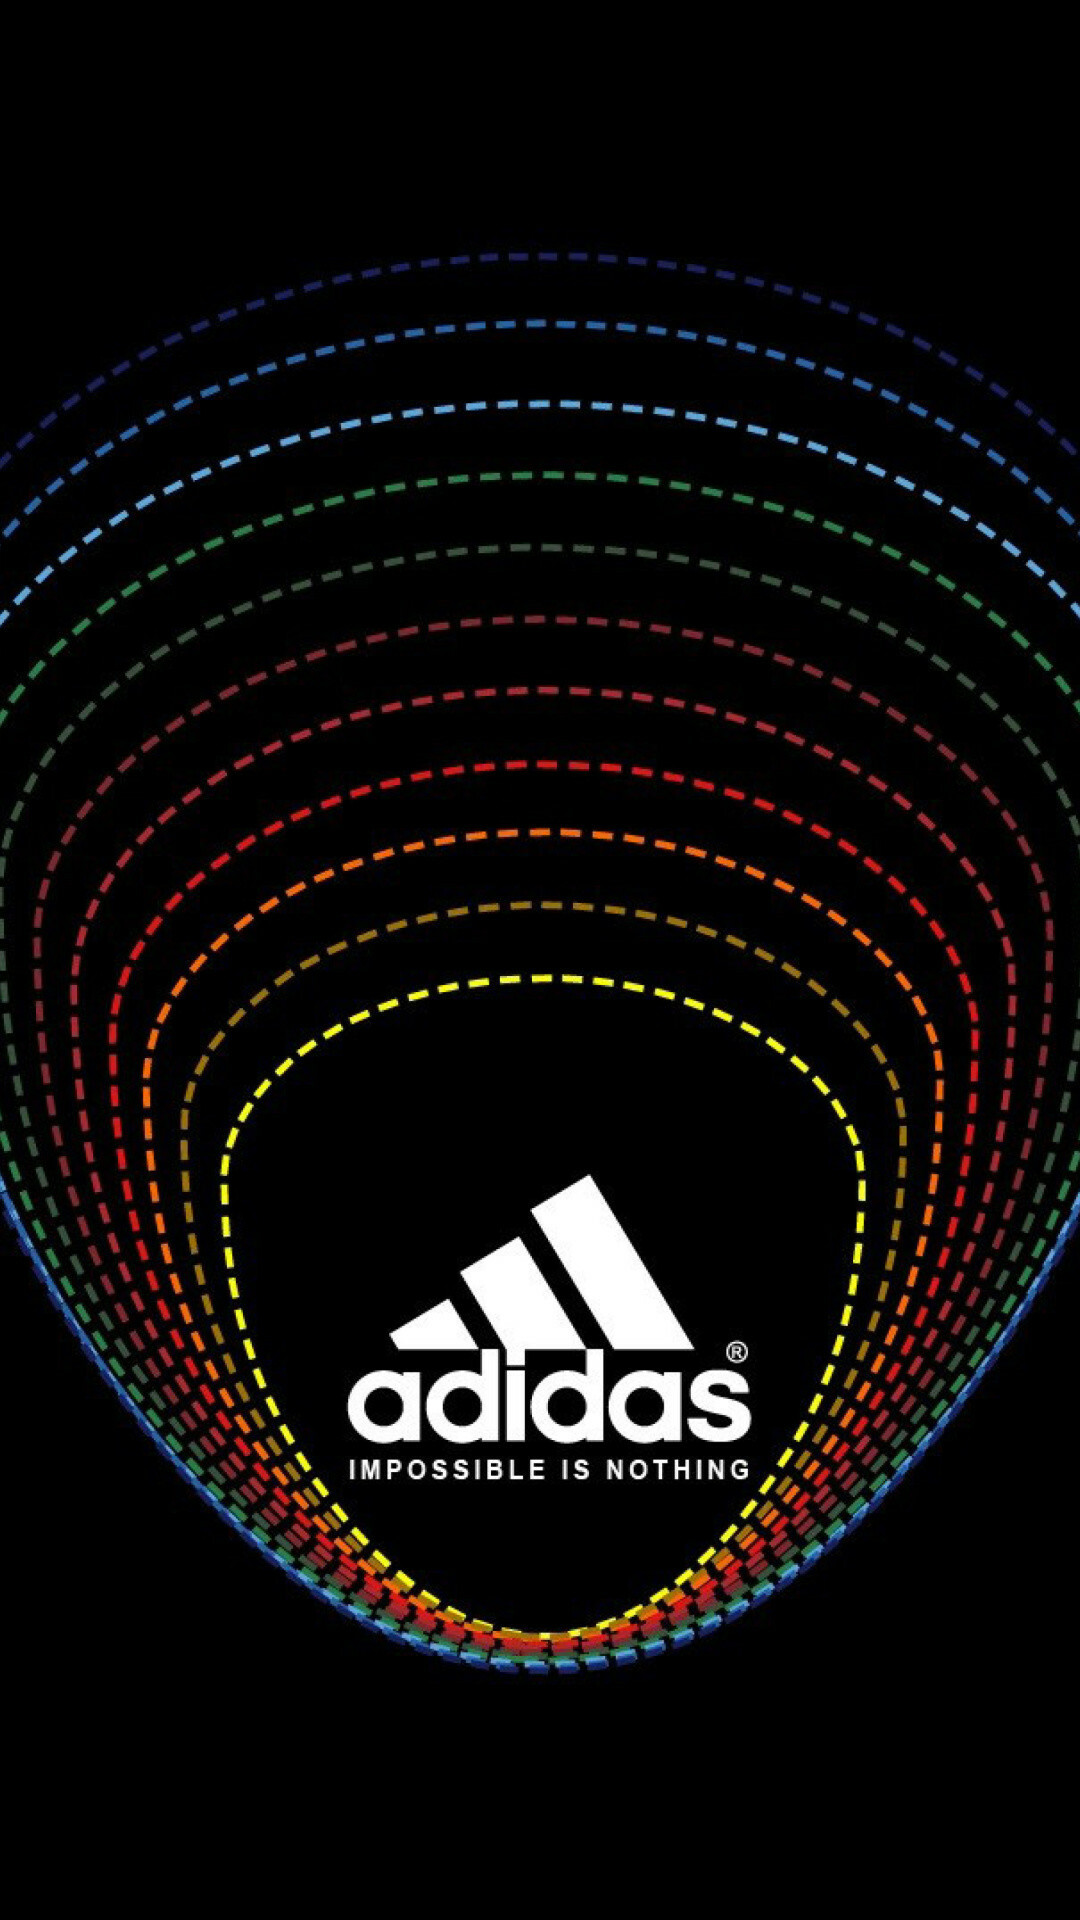 Adidas sports gear, High-performance footwear, Athletic apparel, Sportswear brand, 1080x1920 Full HD Phone